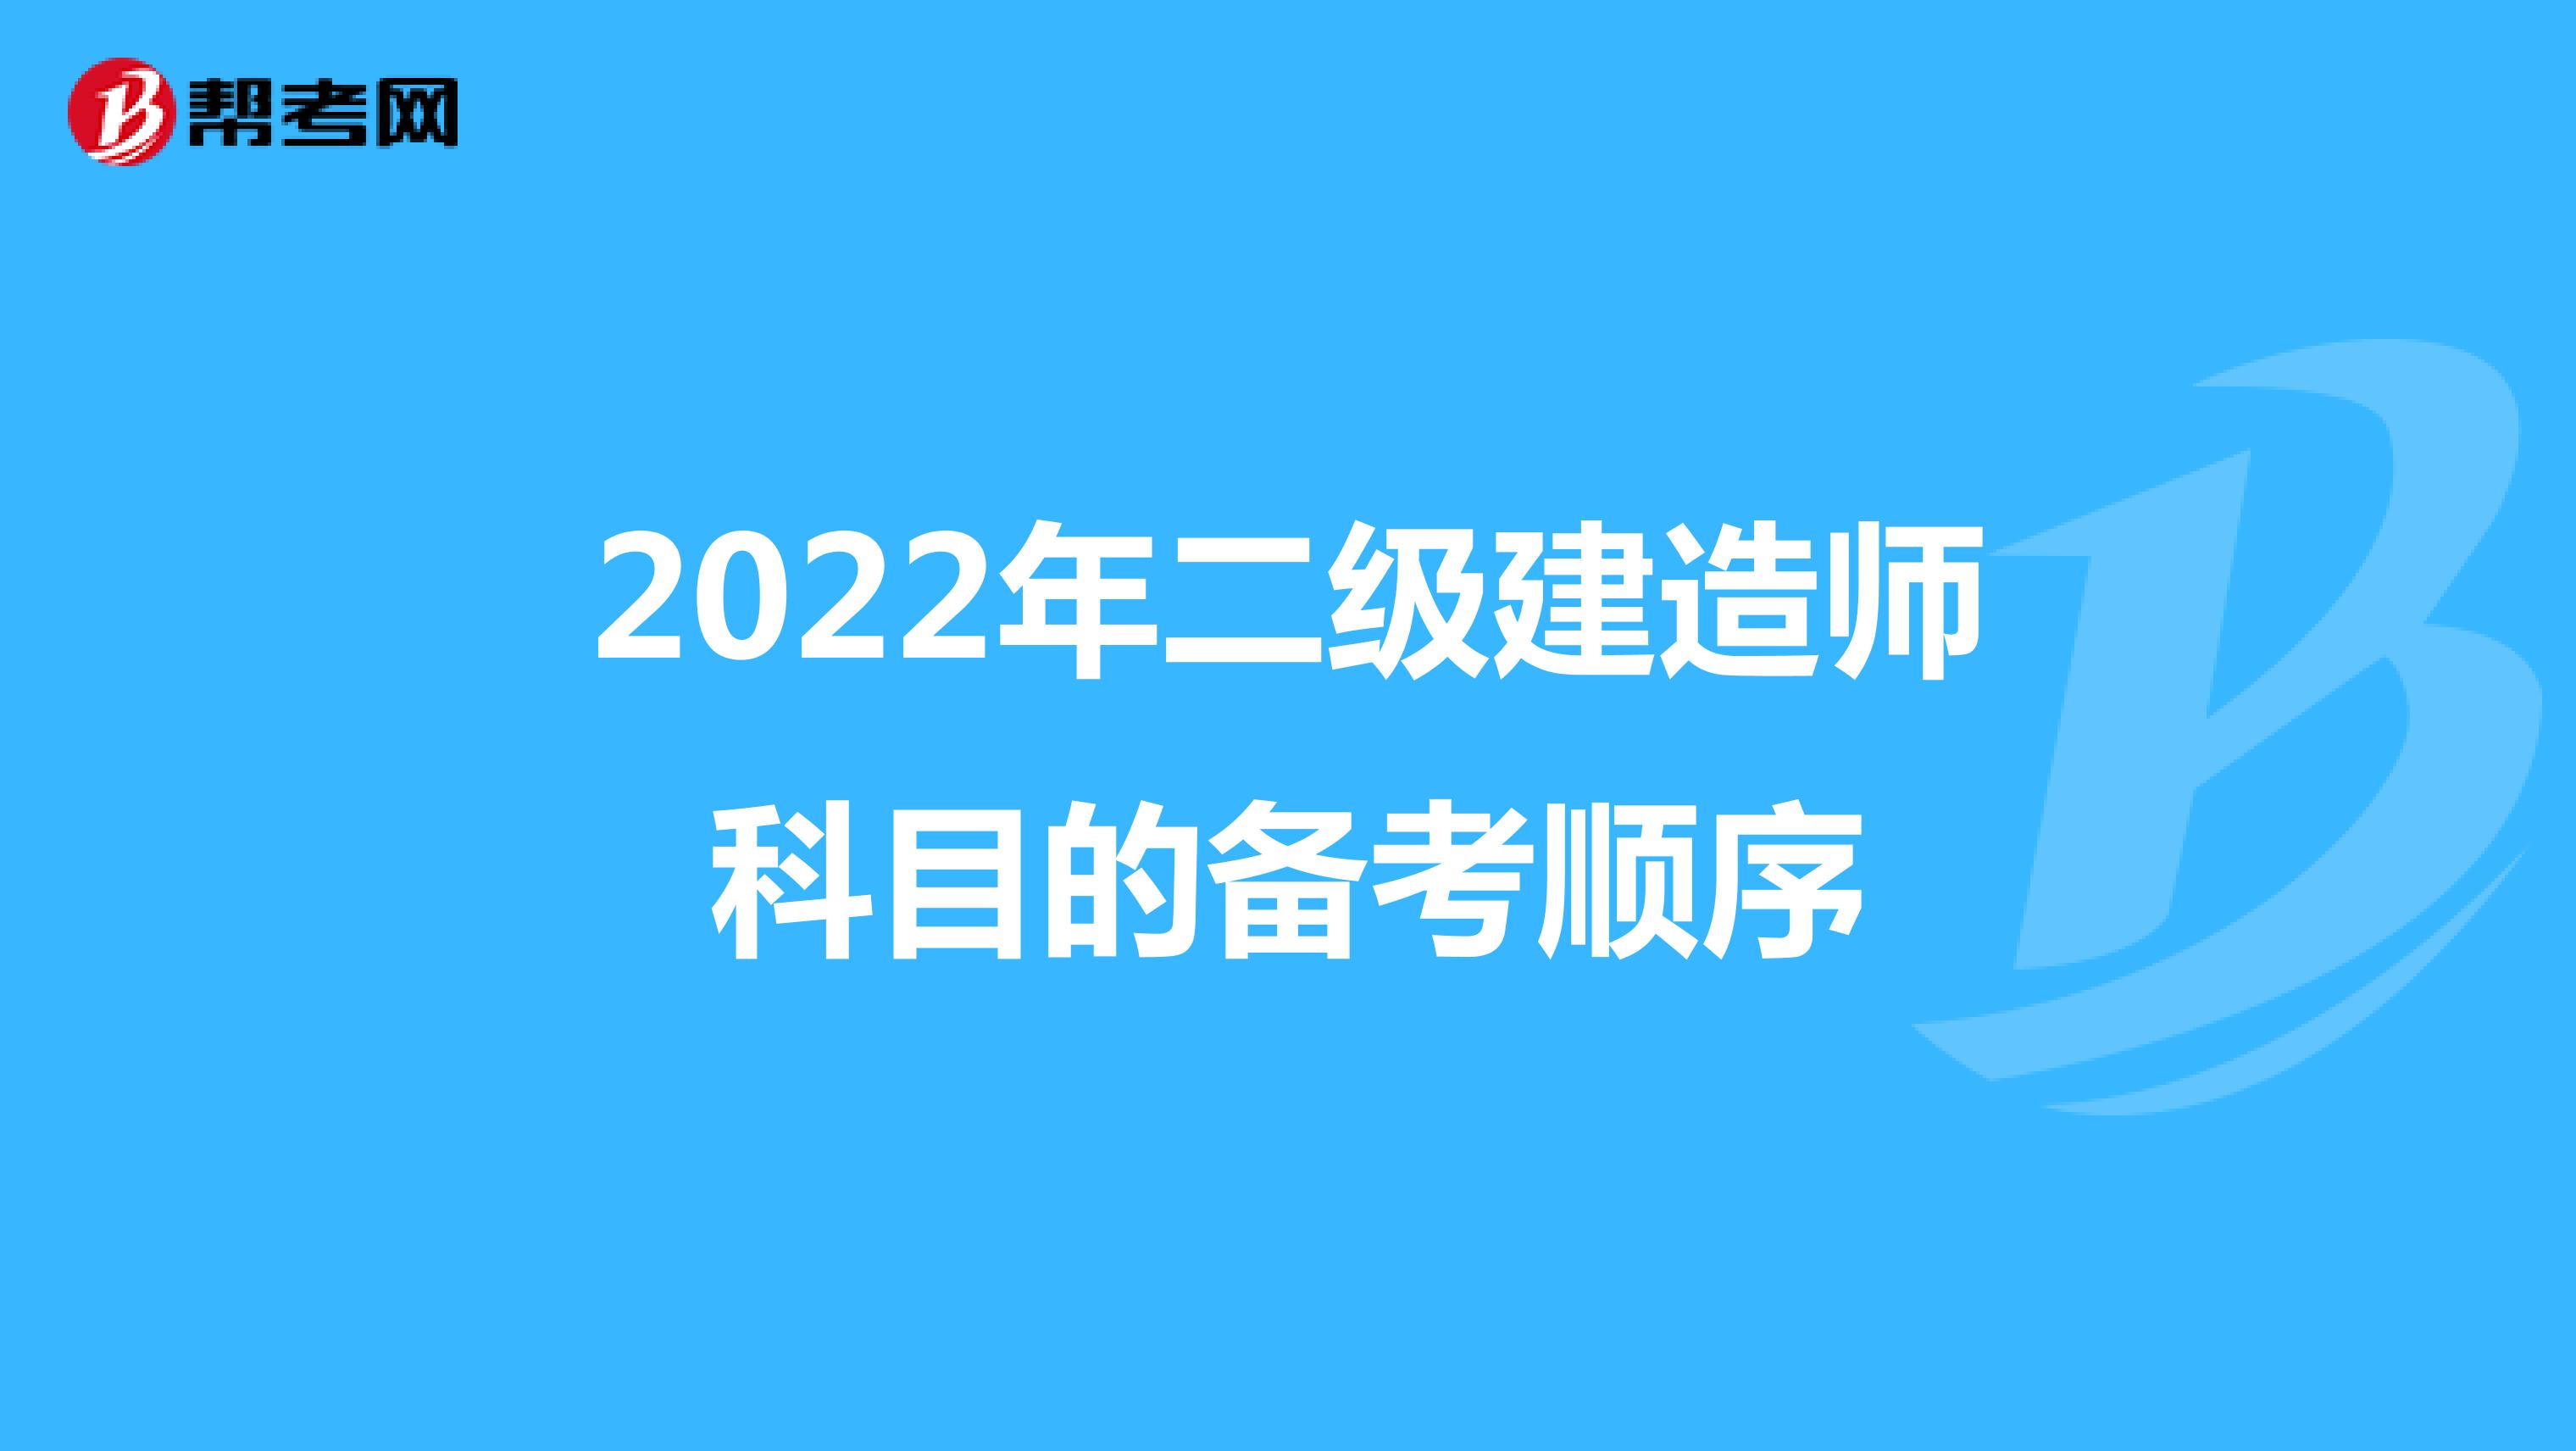 2022年二级建造师科目的备考顺序